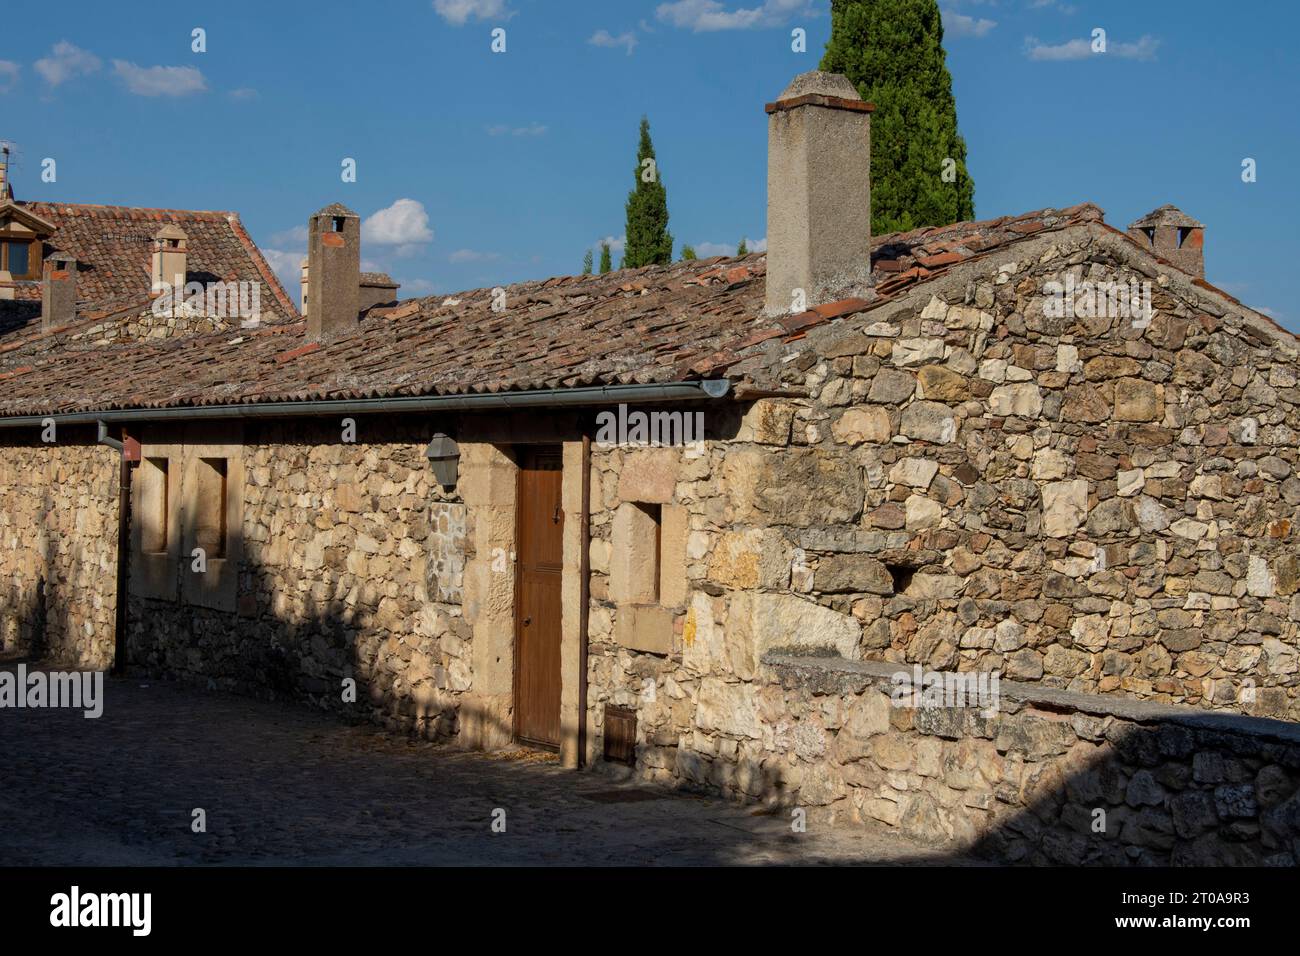 Calles y casas de Pedraza, Segovia Foto Stock